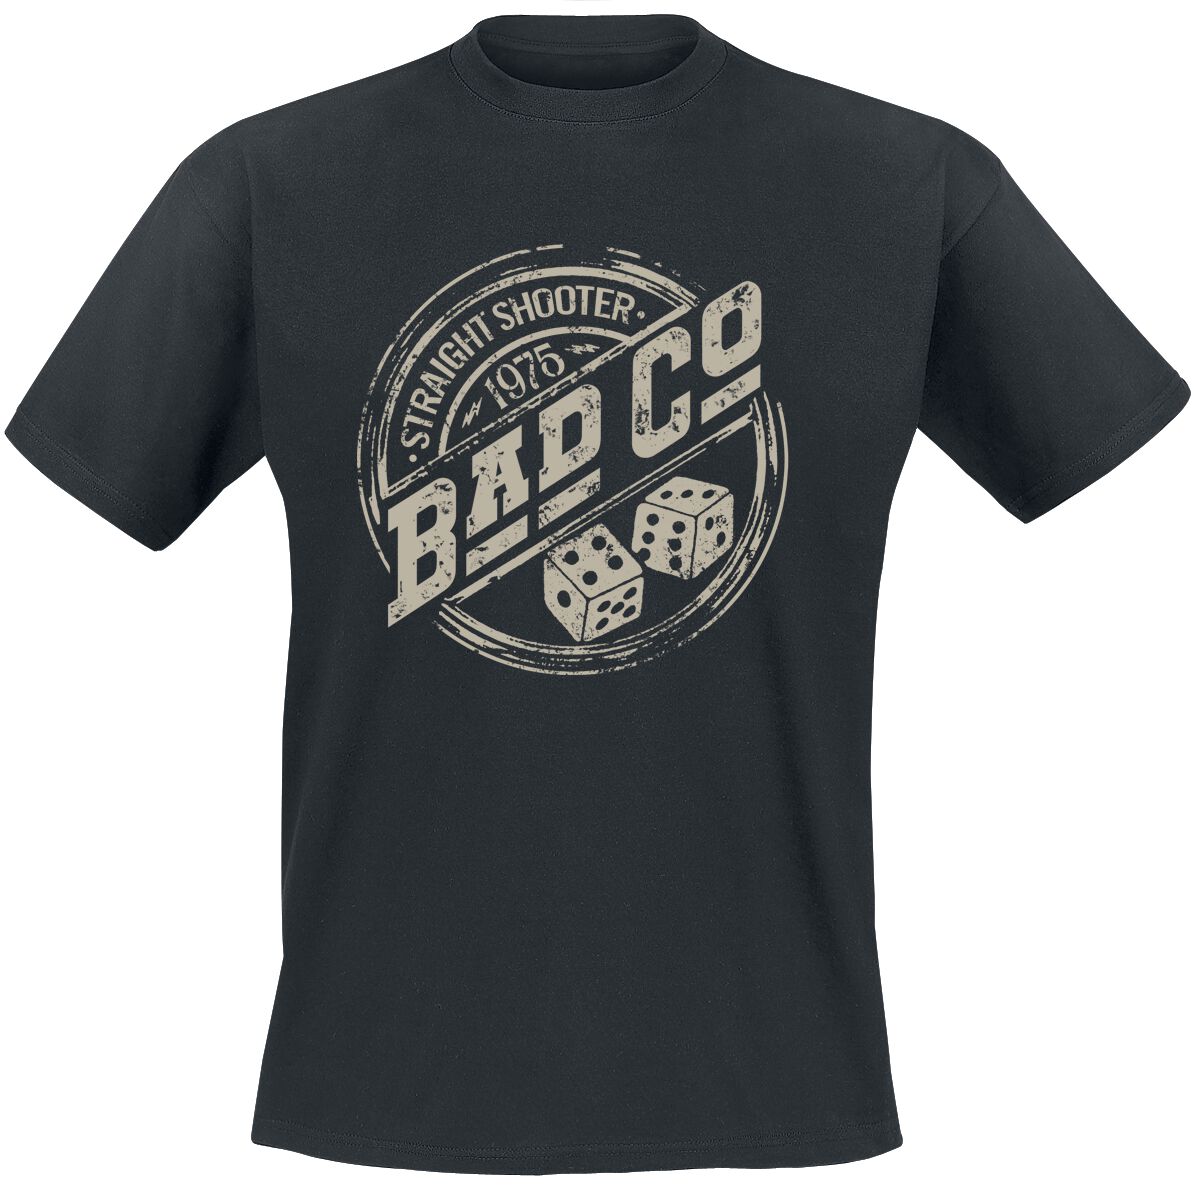 Bad Company T-Shirt - Straight Shooter - S bis XXL - für Männer - Größe S - schwarz  - EMP exklusives Merchandise!